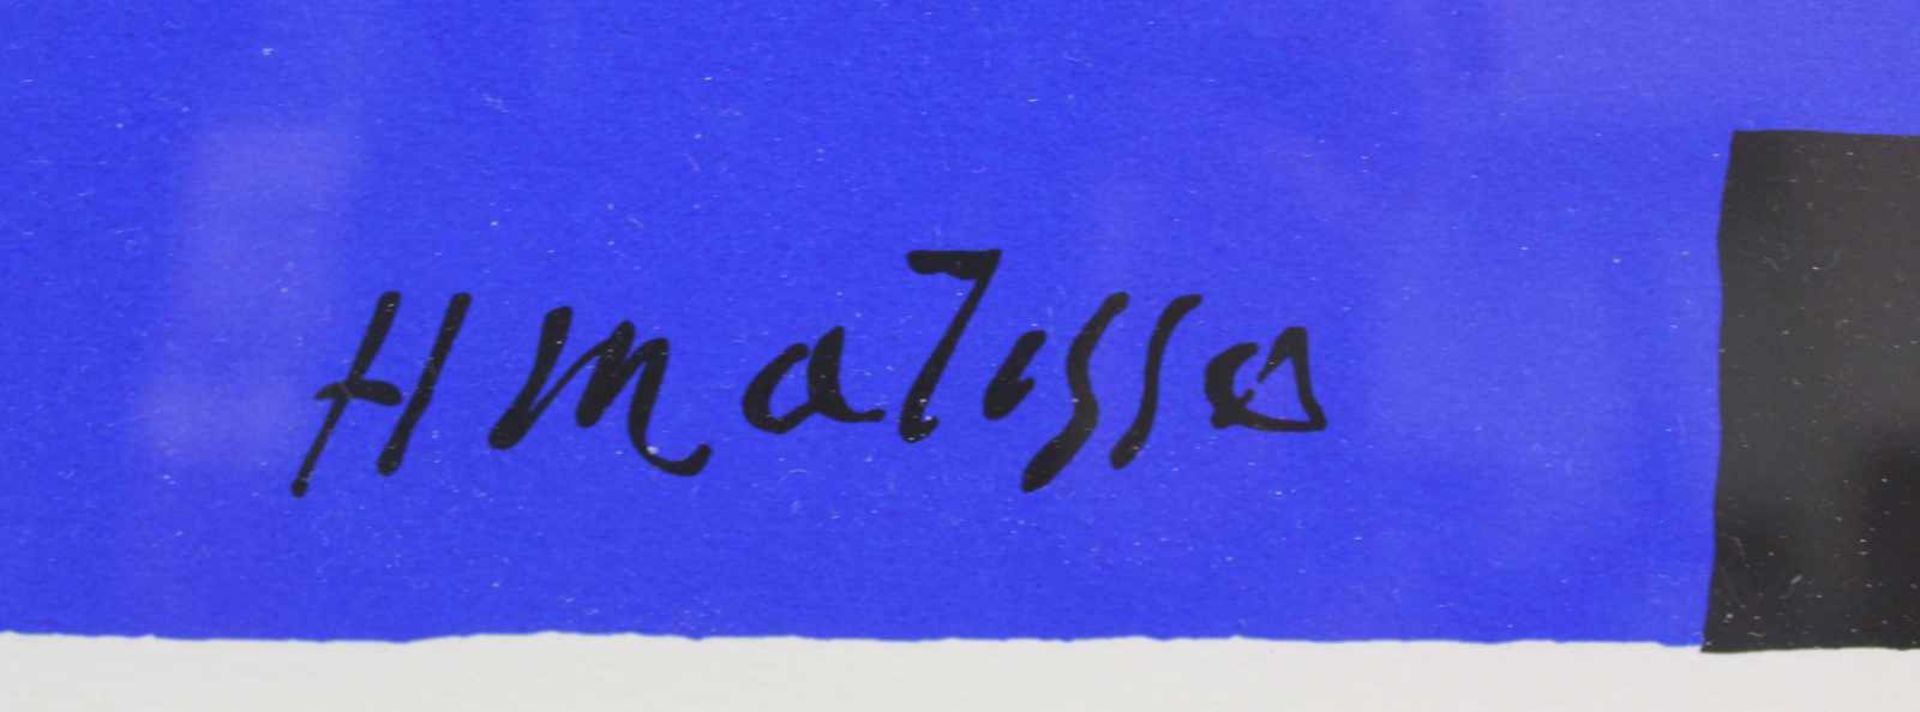 Henri MATISSE (1869 - 1954). Palme blanche in roter und blauer Ausführung. 48 cm x 36 cm. Graphik. - Bild 3 aus 8